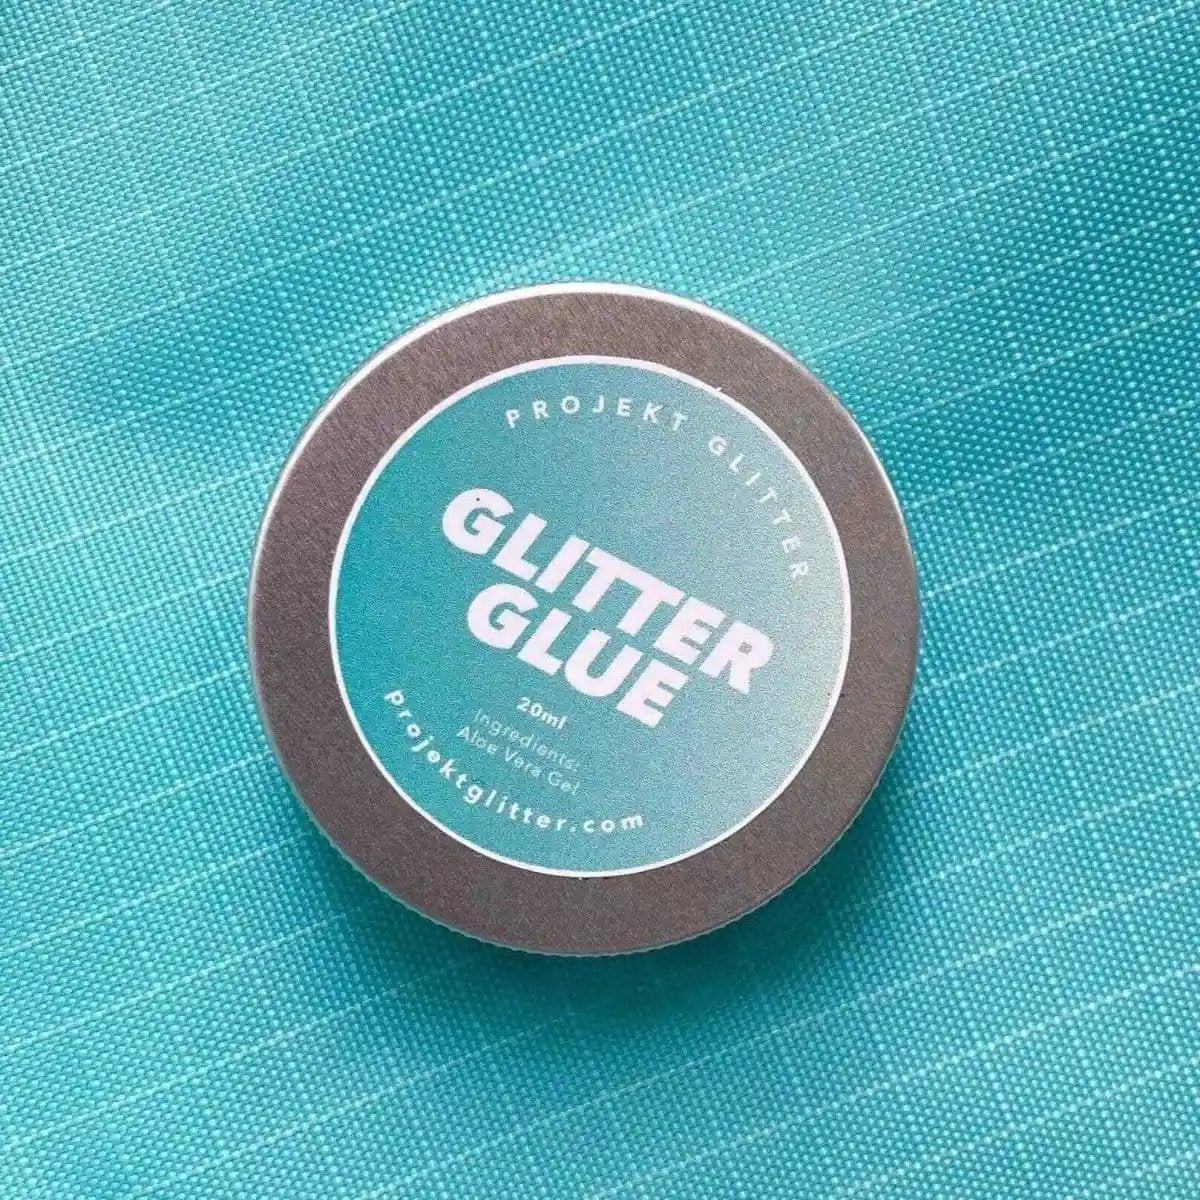 Glitter Fix - Projekt Glitter